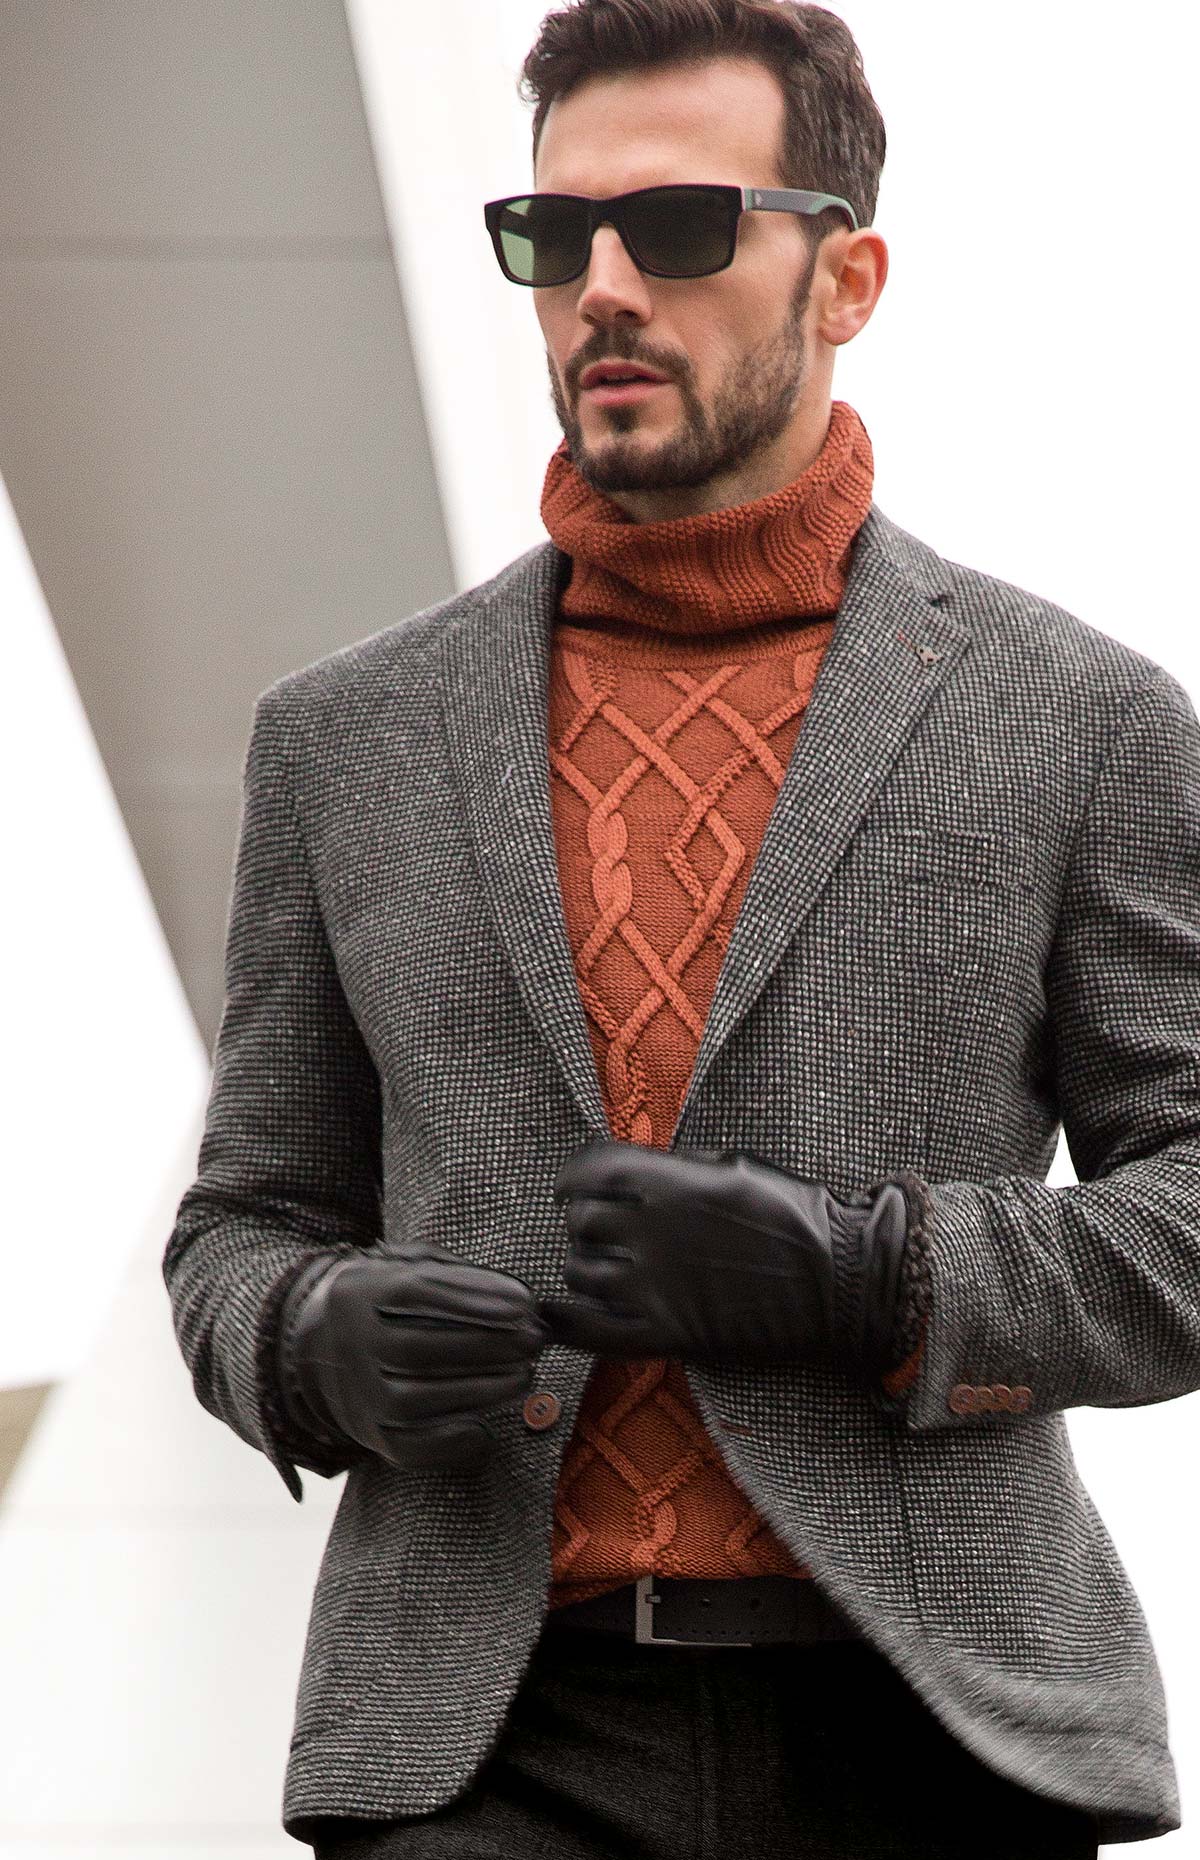 Мужская мода зимы 2019: ТОП-10 идей для стильного образа